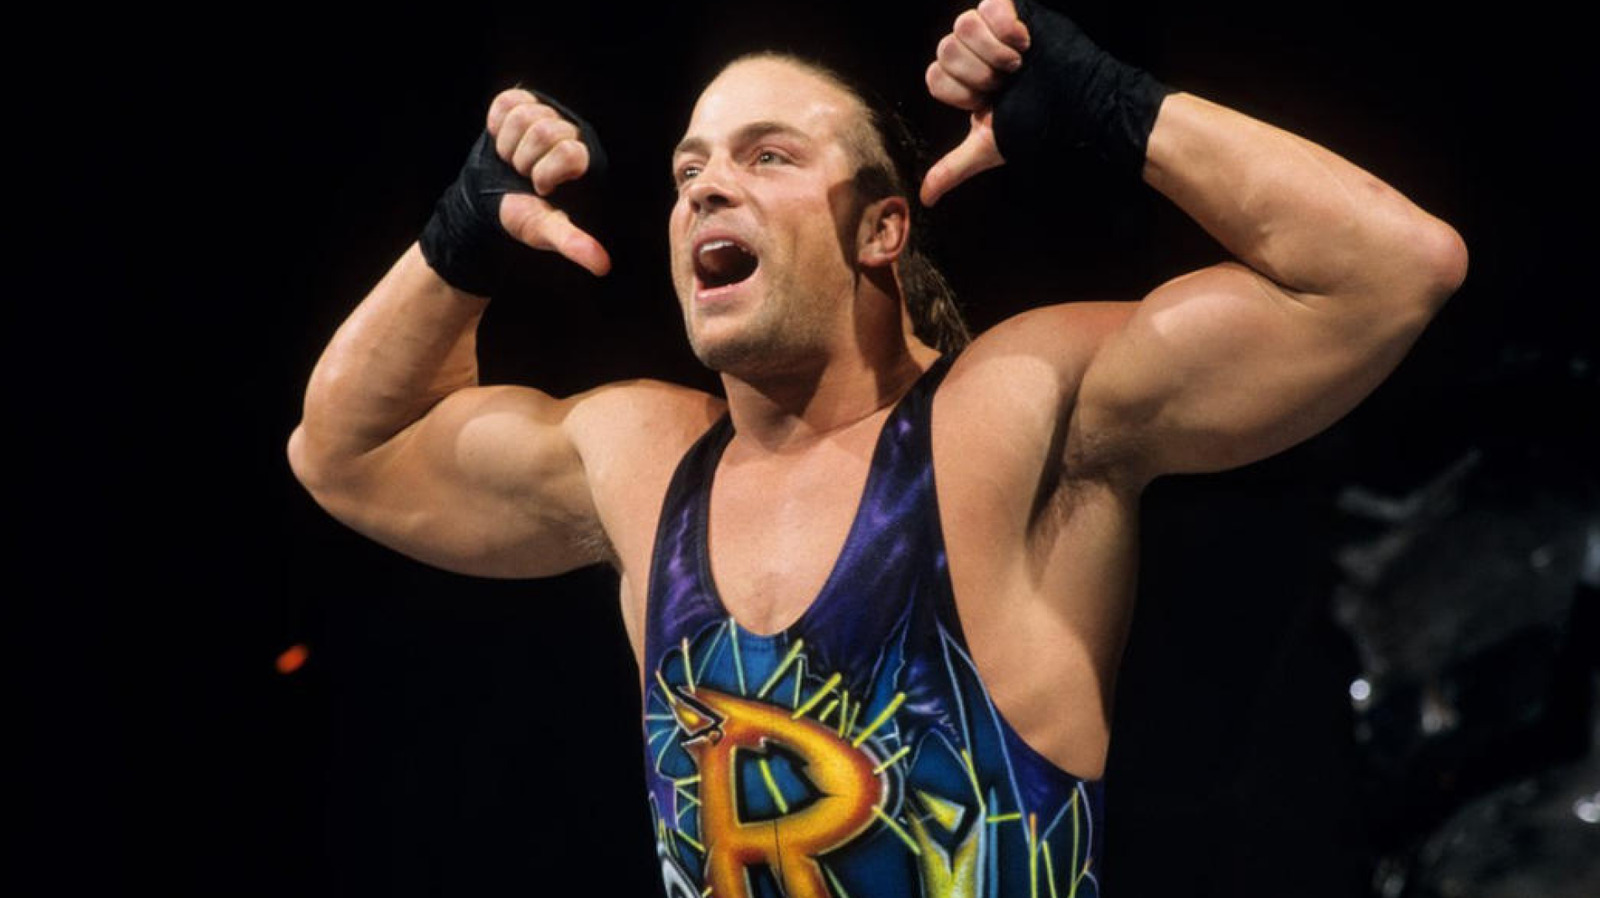 El miembro del Salón de la Fama de la WWE, Rob Van Dam, reacciona a las acusaciones contra Vince McMahon